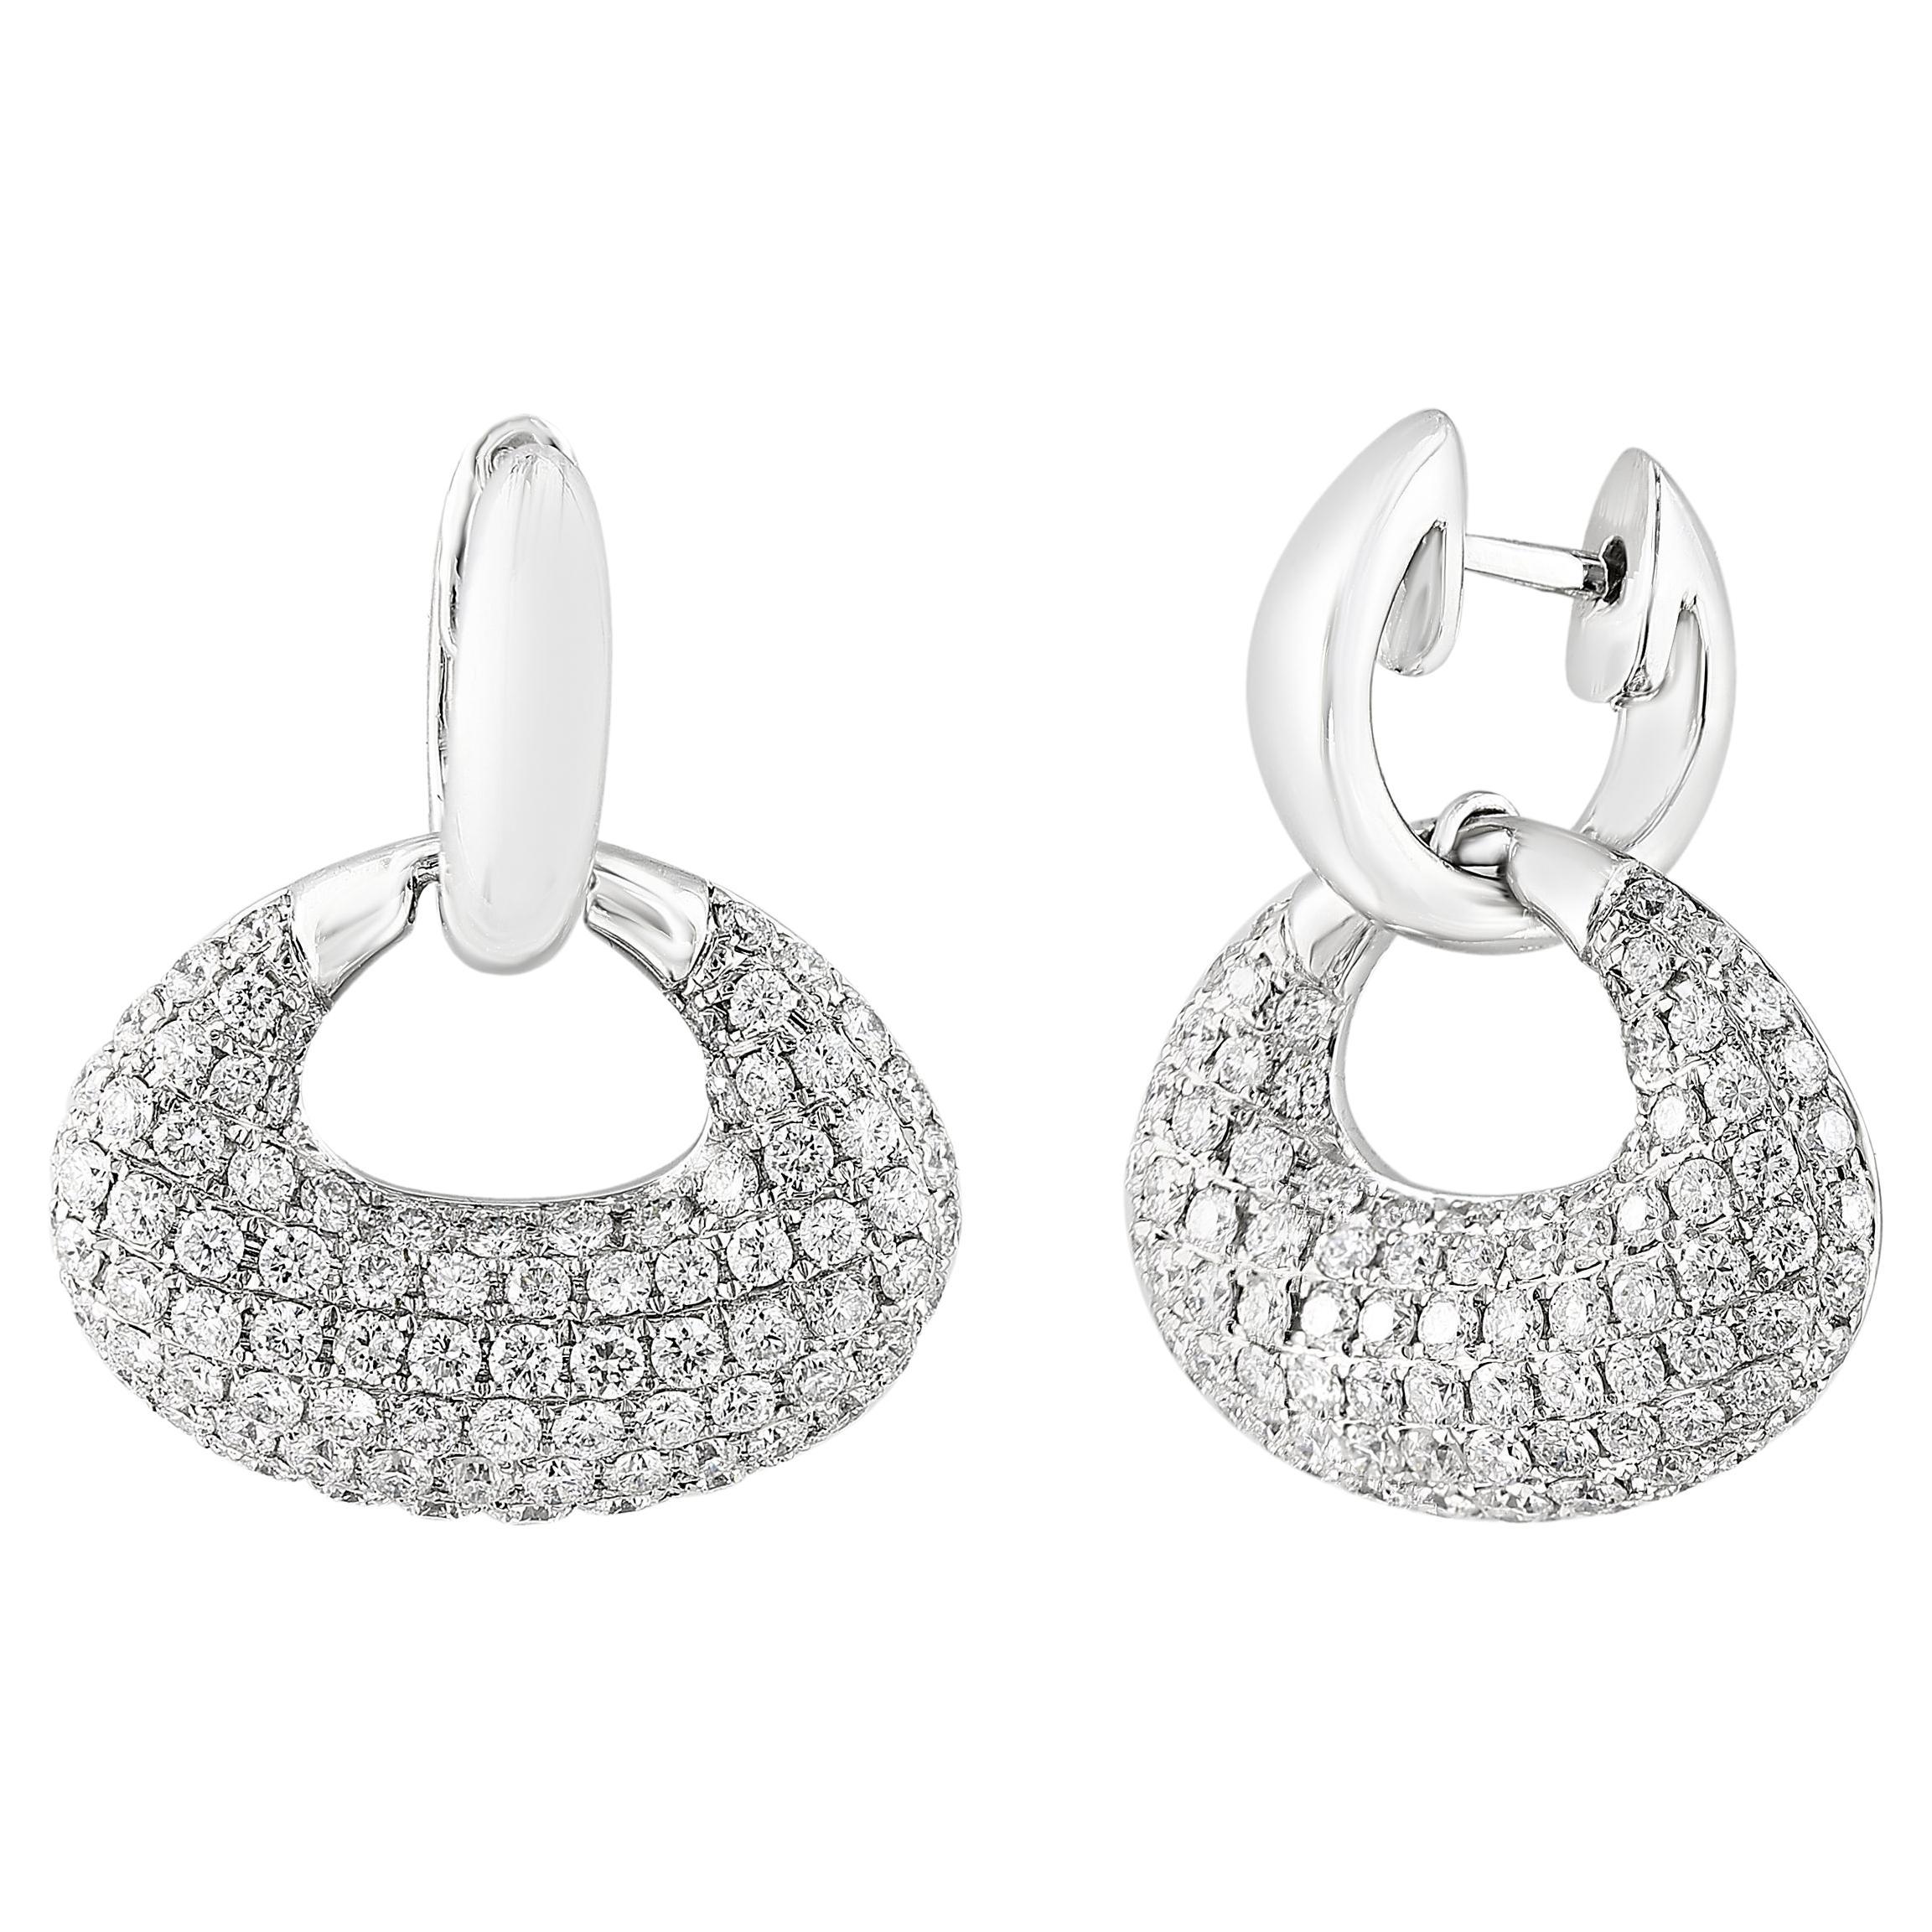 2.49 Carat Brilliant Cut Diamond Drop Earrings in 18K White Gold